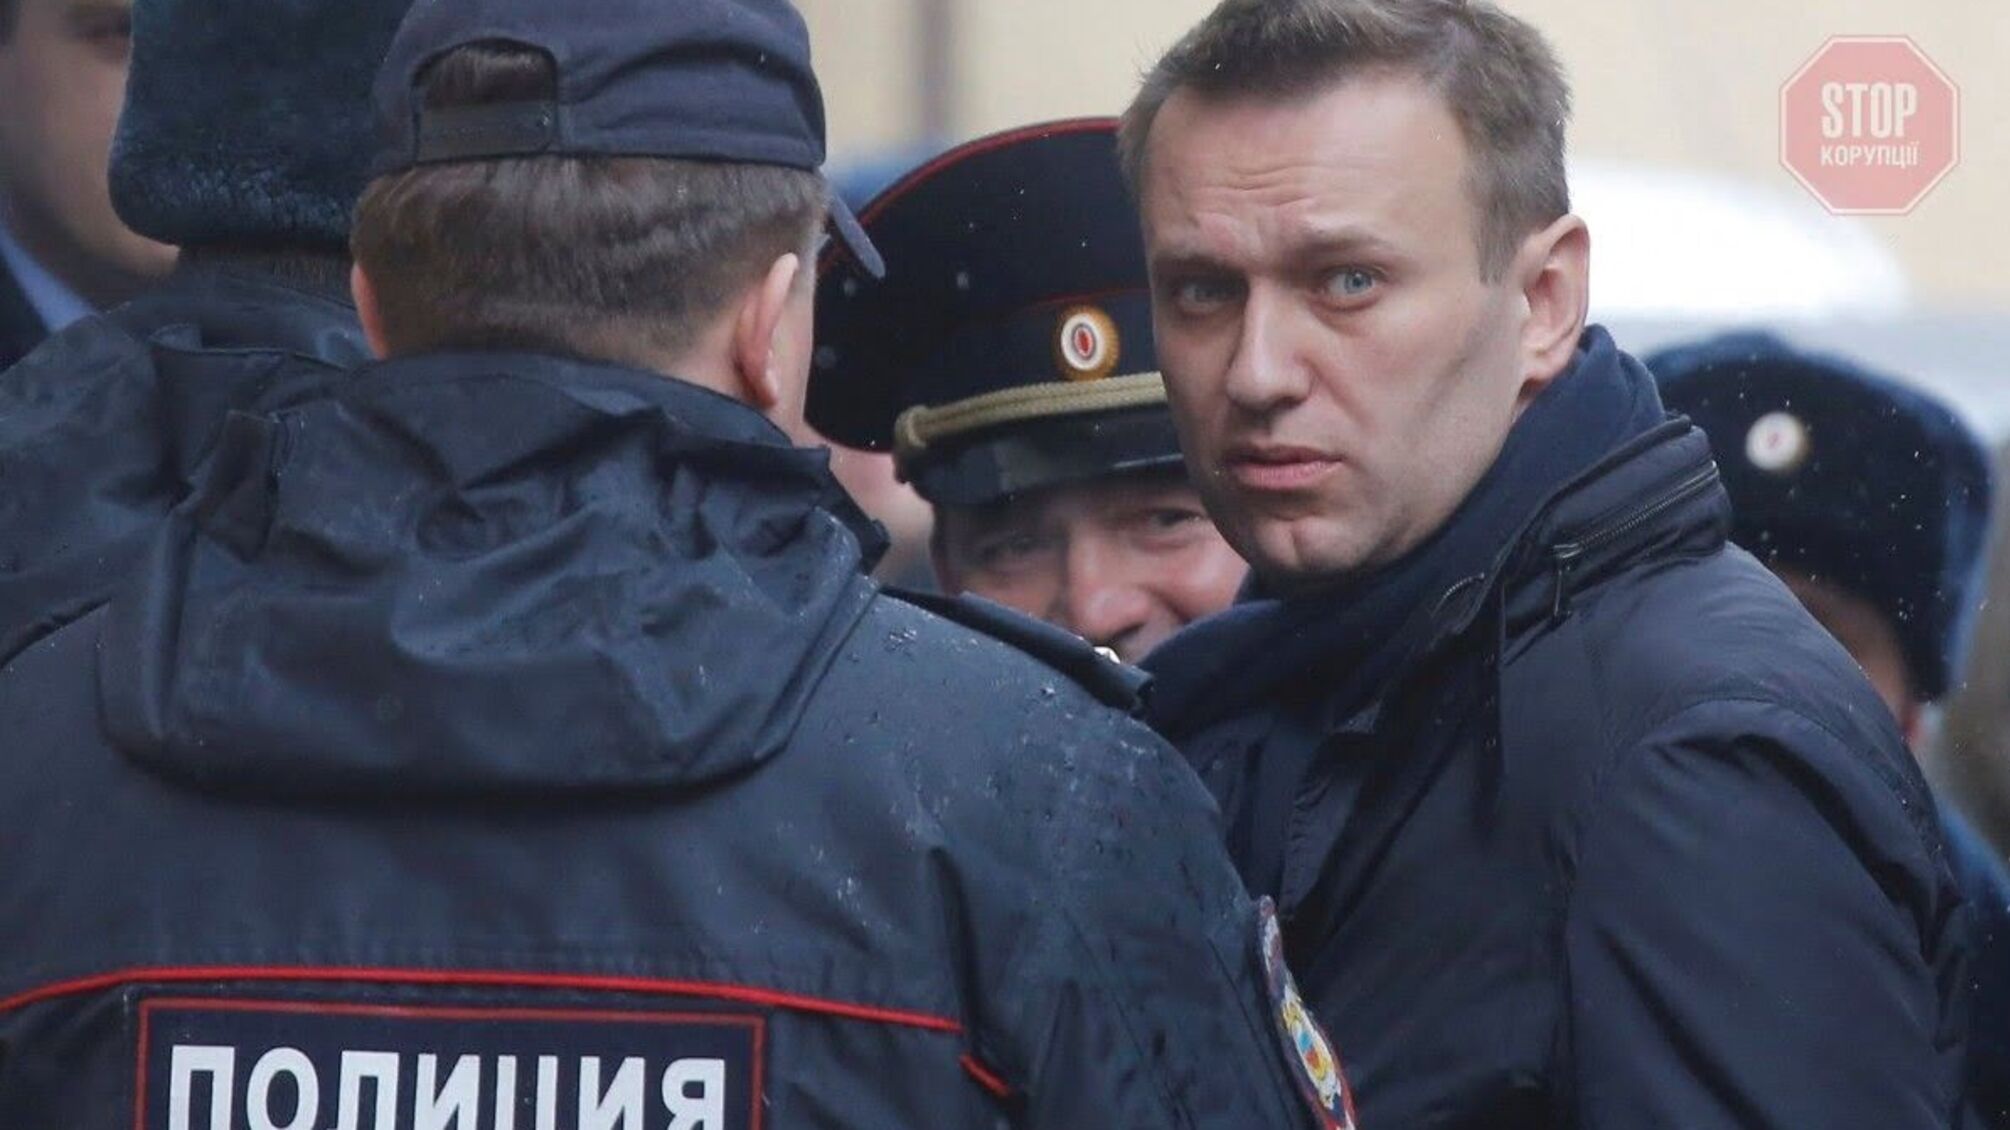 Состояние здоровья российского оппозиционера Навального постепенно ухудшается